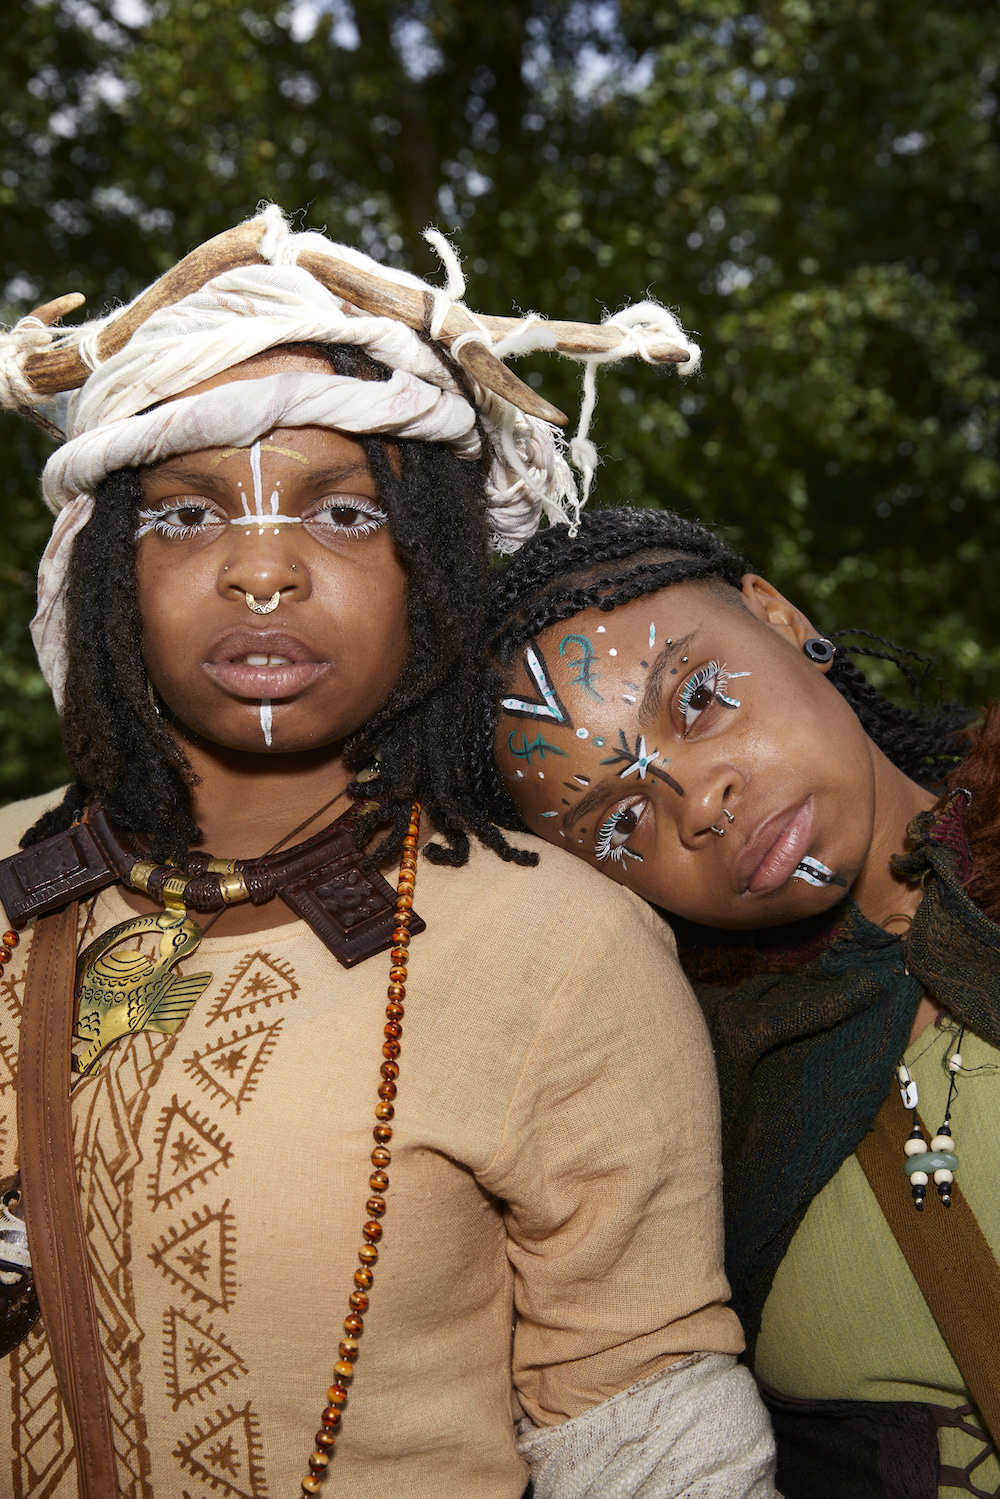 Zwei Frauen mit afrikanischem Schmuck und Mustern und geschminkten Gesichtern